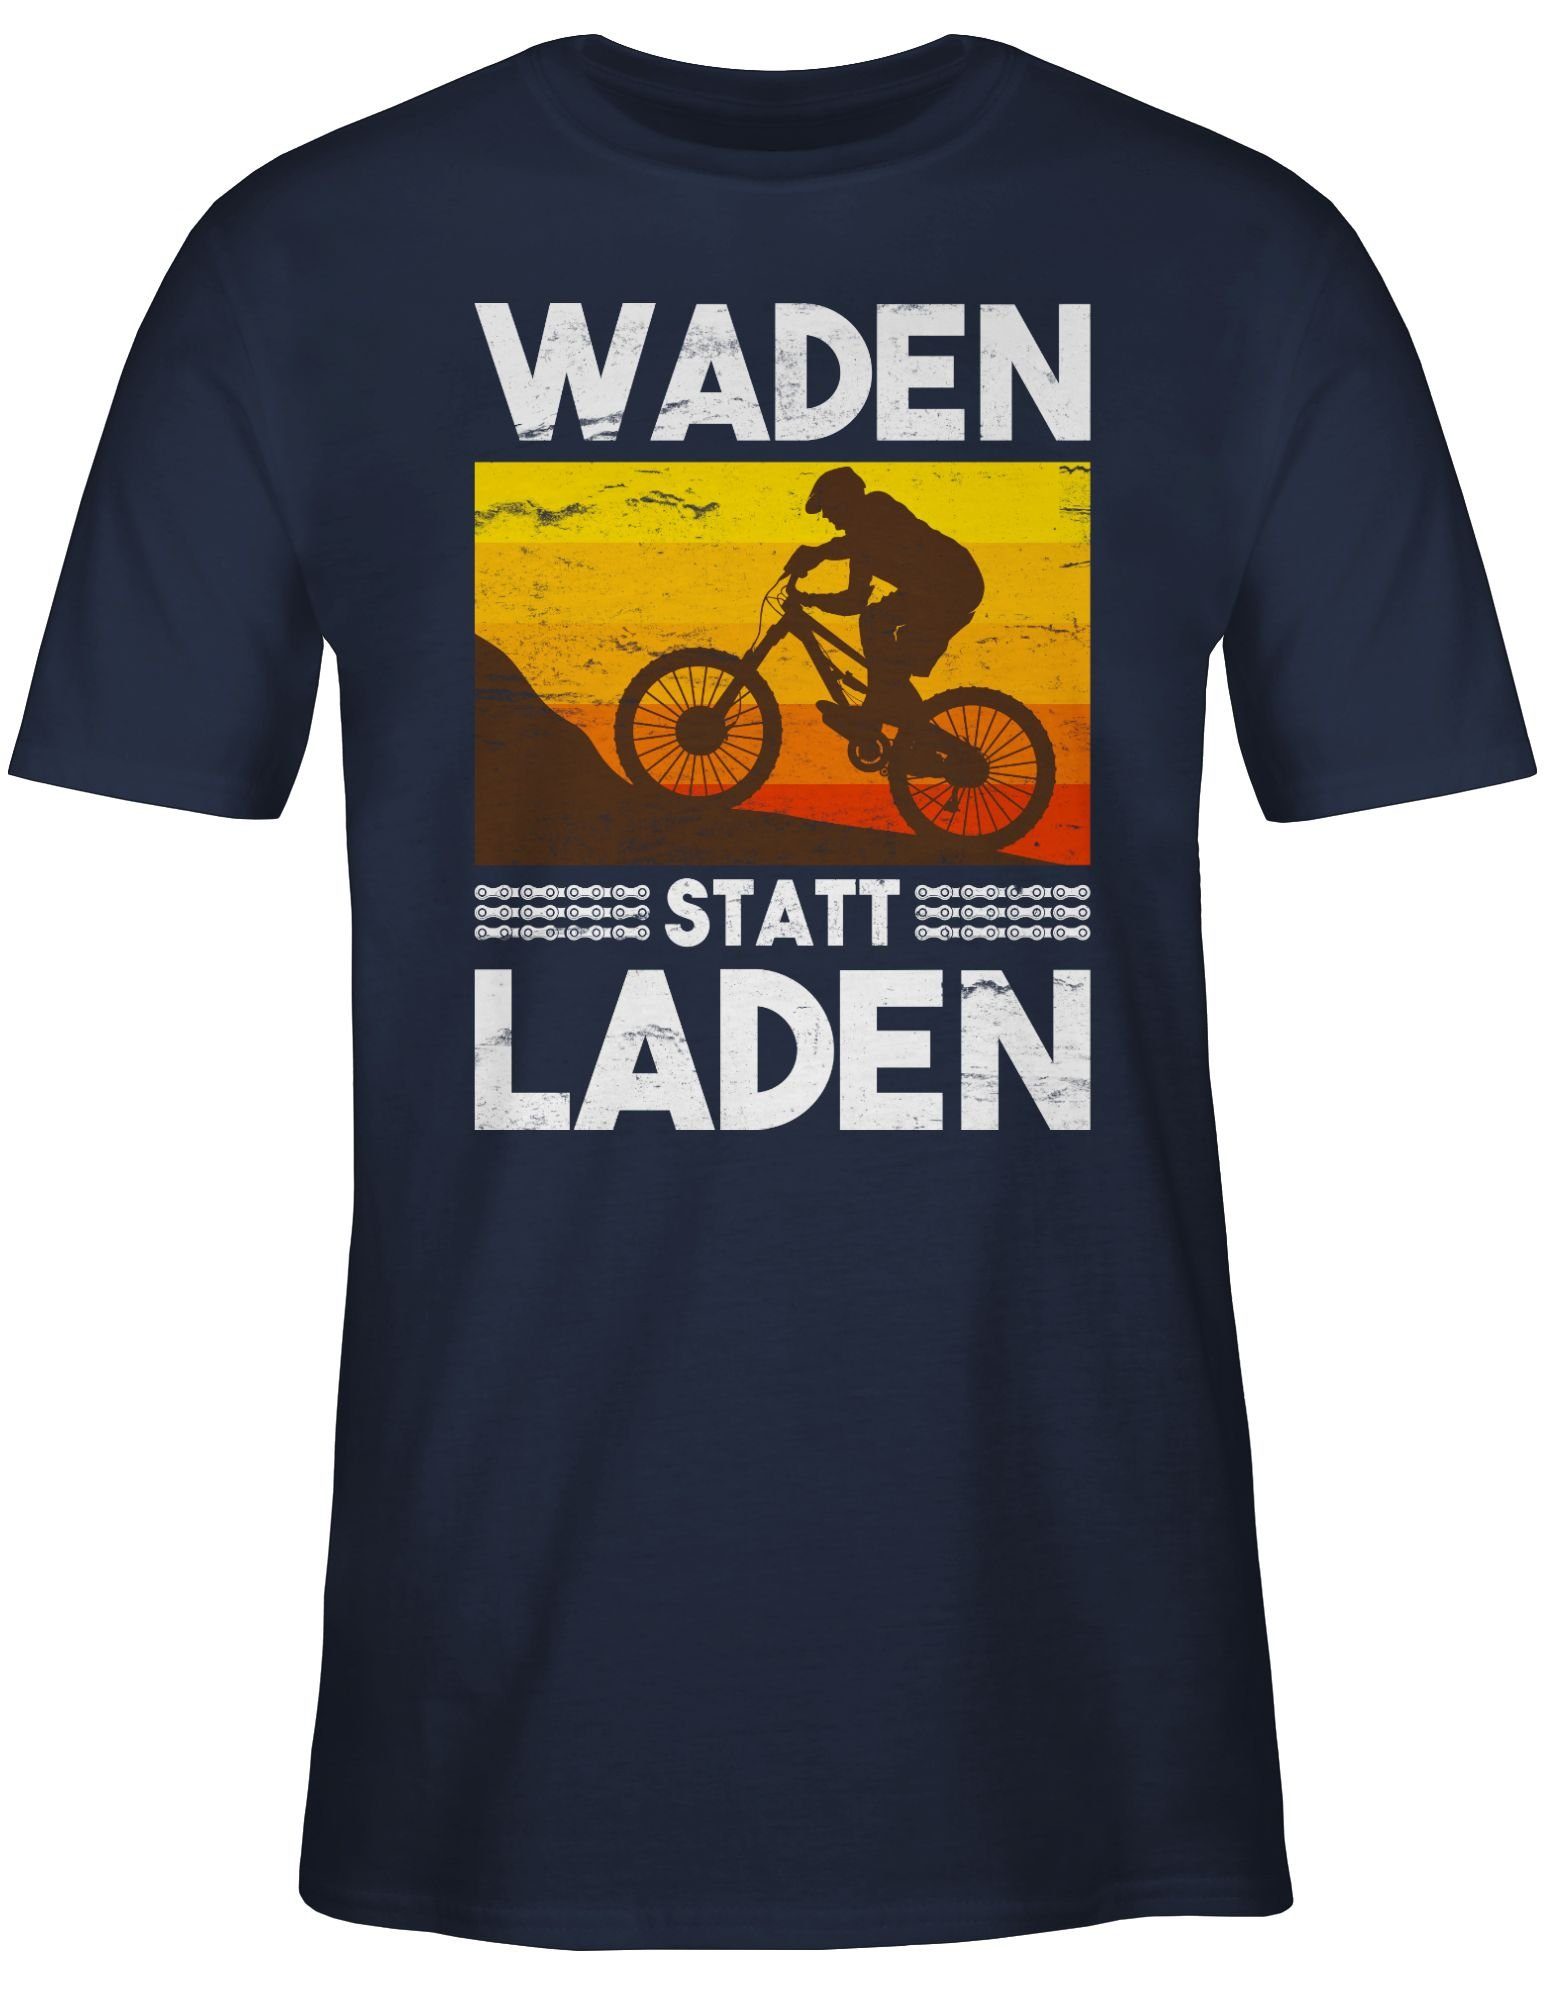 02 Vintage Radsport Waden Navy weiß Laden Shirtracer Fahrrad Bekleidung T-Shirt statt Blau